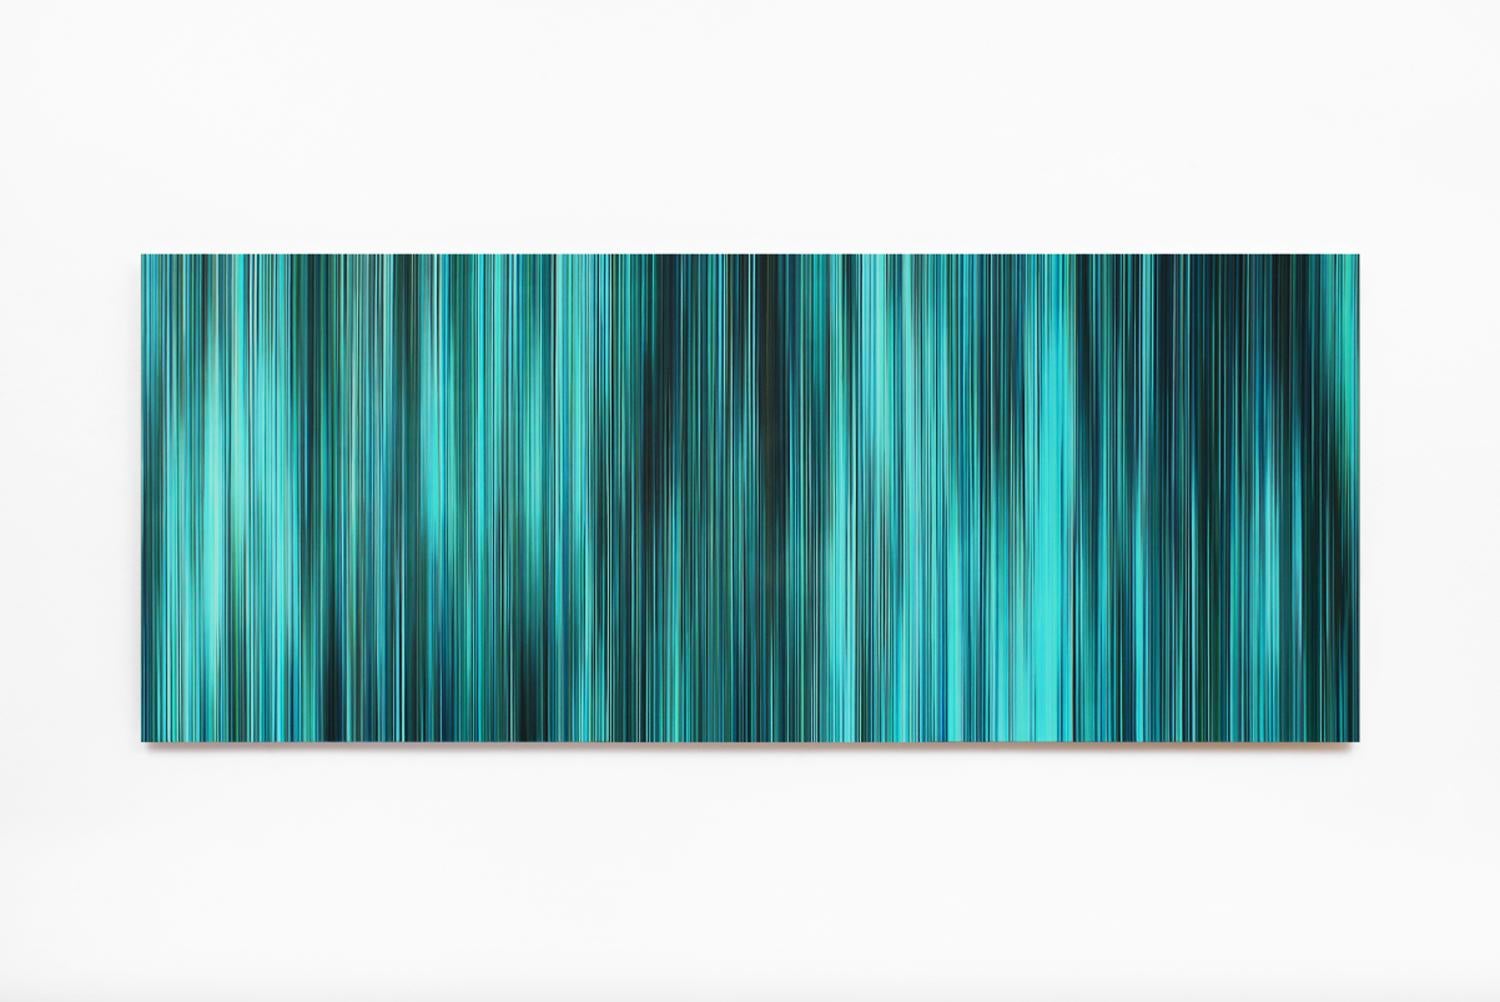 Öl auf Alu-Dibond, 80 x 200 cm.
Die deutsche Künstlerin Doris Marten erforscht die visuellen Effekte, die durch die Harmonie zwischen Licht und Farbe entstehen. Linien und das Licht sind die Hauptbestandteile ihrer Bilder. In der Serie Light'n'Lines